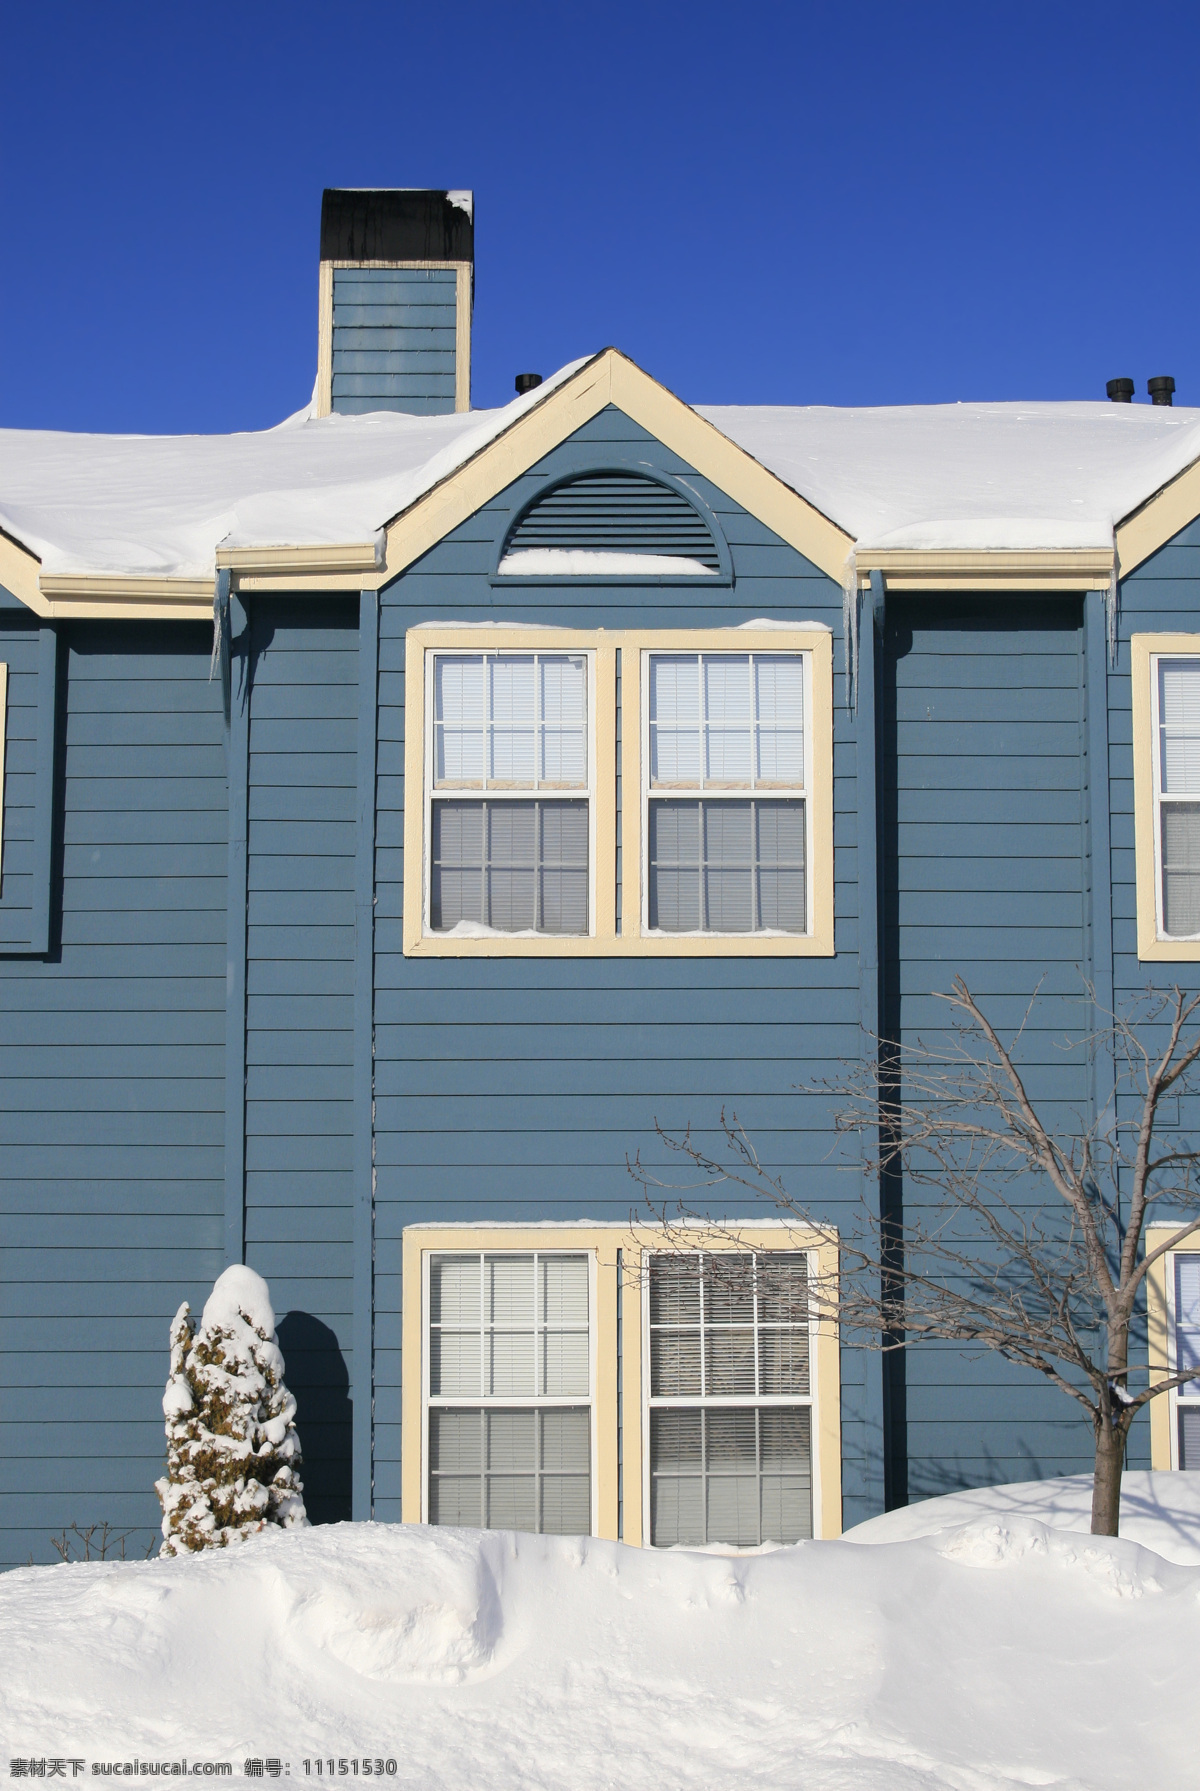 冬天房屋摄影 房屋建筑 房子 室外 建筑 别墅 房屋 住家 楼房 树木 积雪 雪地 外景面貌 建筑设计 环境家居 蓝色